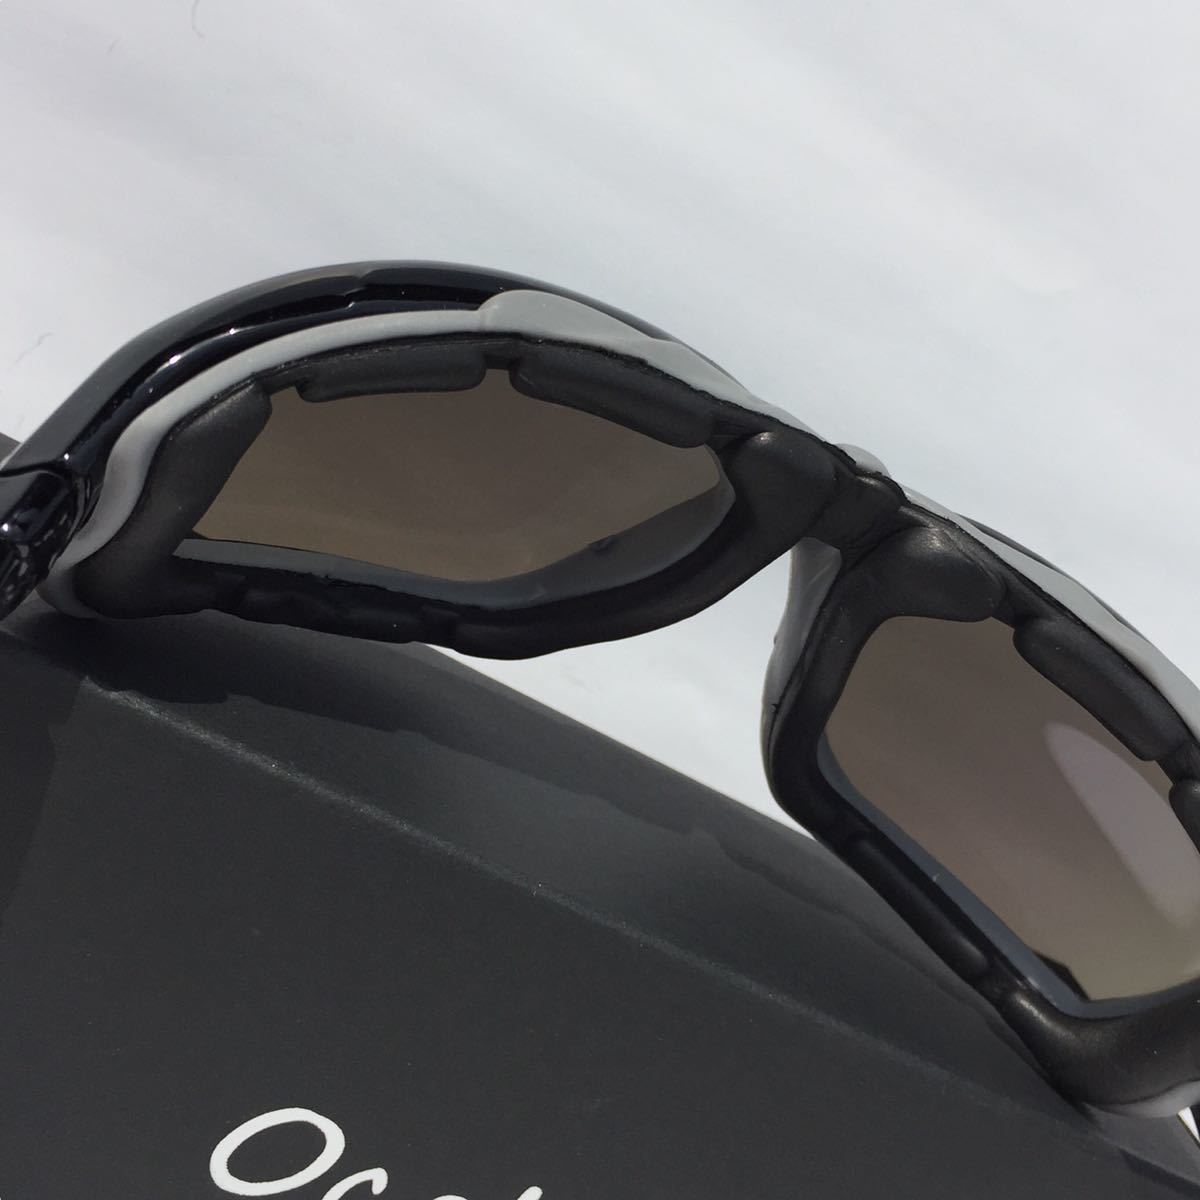 新品 OCCHI 偏光サングラス UV400 軽量 スクエア型 ブルーミラー 